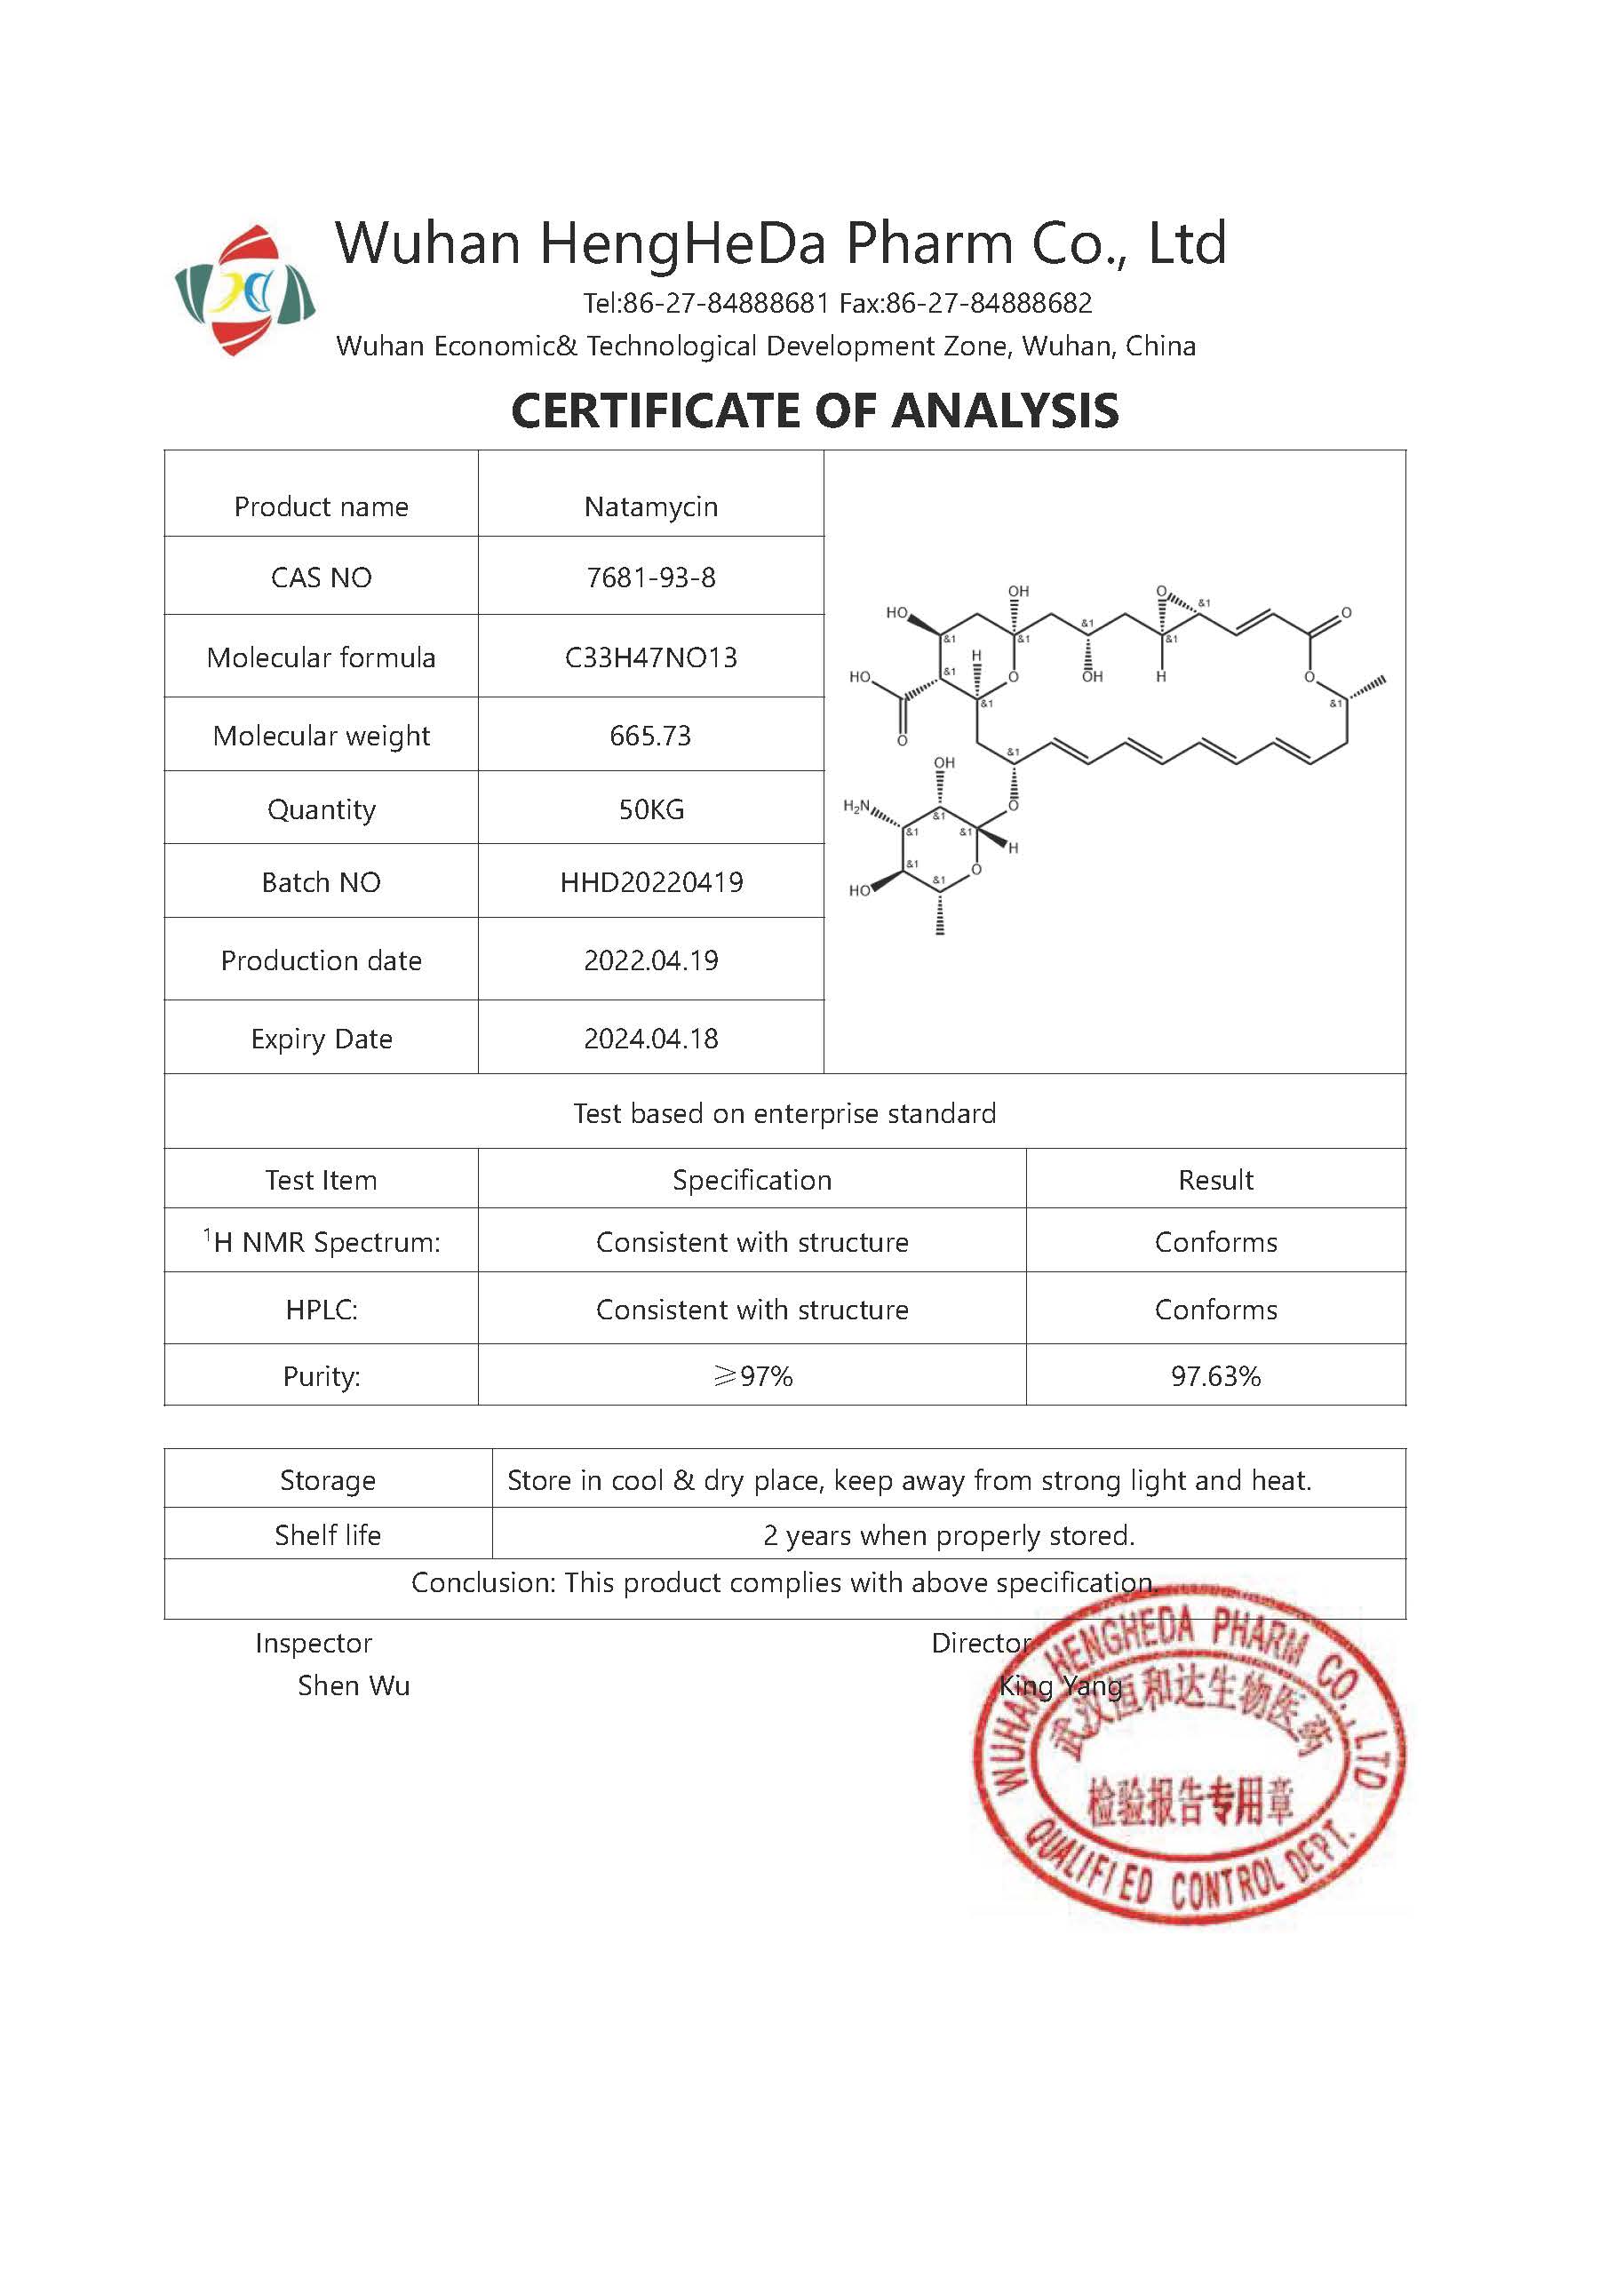 Kup Dostawa fabrycznie wysokiej jakości Natamycin CAS 7681-93-8,Dostawa fabrycznie wysokiej jakości Natamycin CAS 7681-93-8 Cena,Dostawa fabrycznie wysokiej jakości Natamycin CAS 7681-93-8 marki,Dostawa fabrycznie wysokiej jakości Natamycin CAS 7681-93-8 Producent,Dostawa fabrycznie wysokiej jakości Natamycin CAS 7681-93-8 Cytaty,Dostawa fabrycznie wysokiej jakości Natamycin CAS 7681-93-8 spółka,